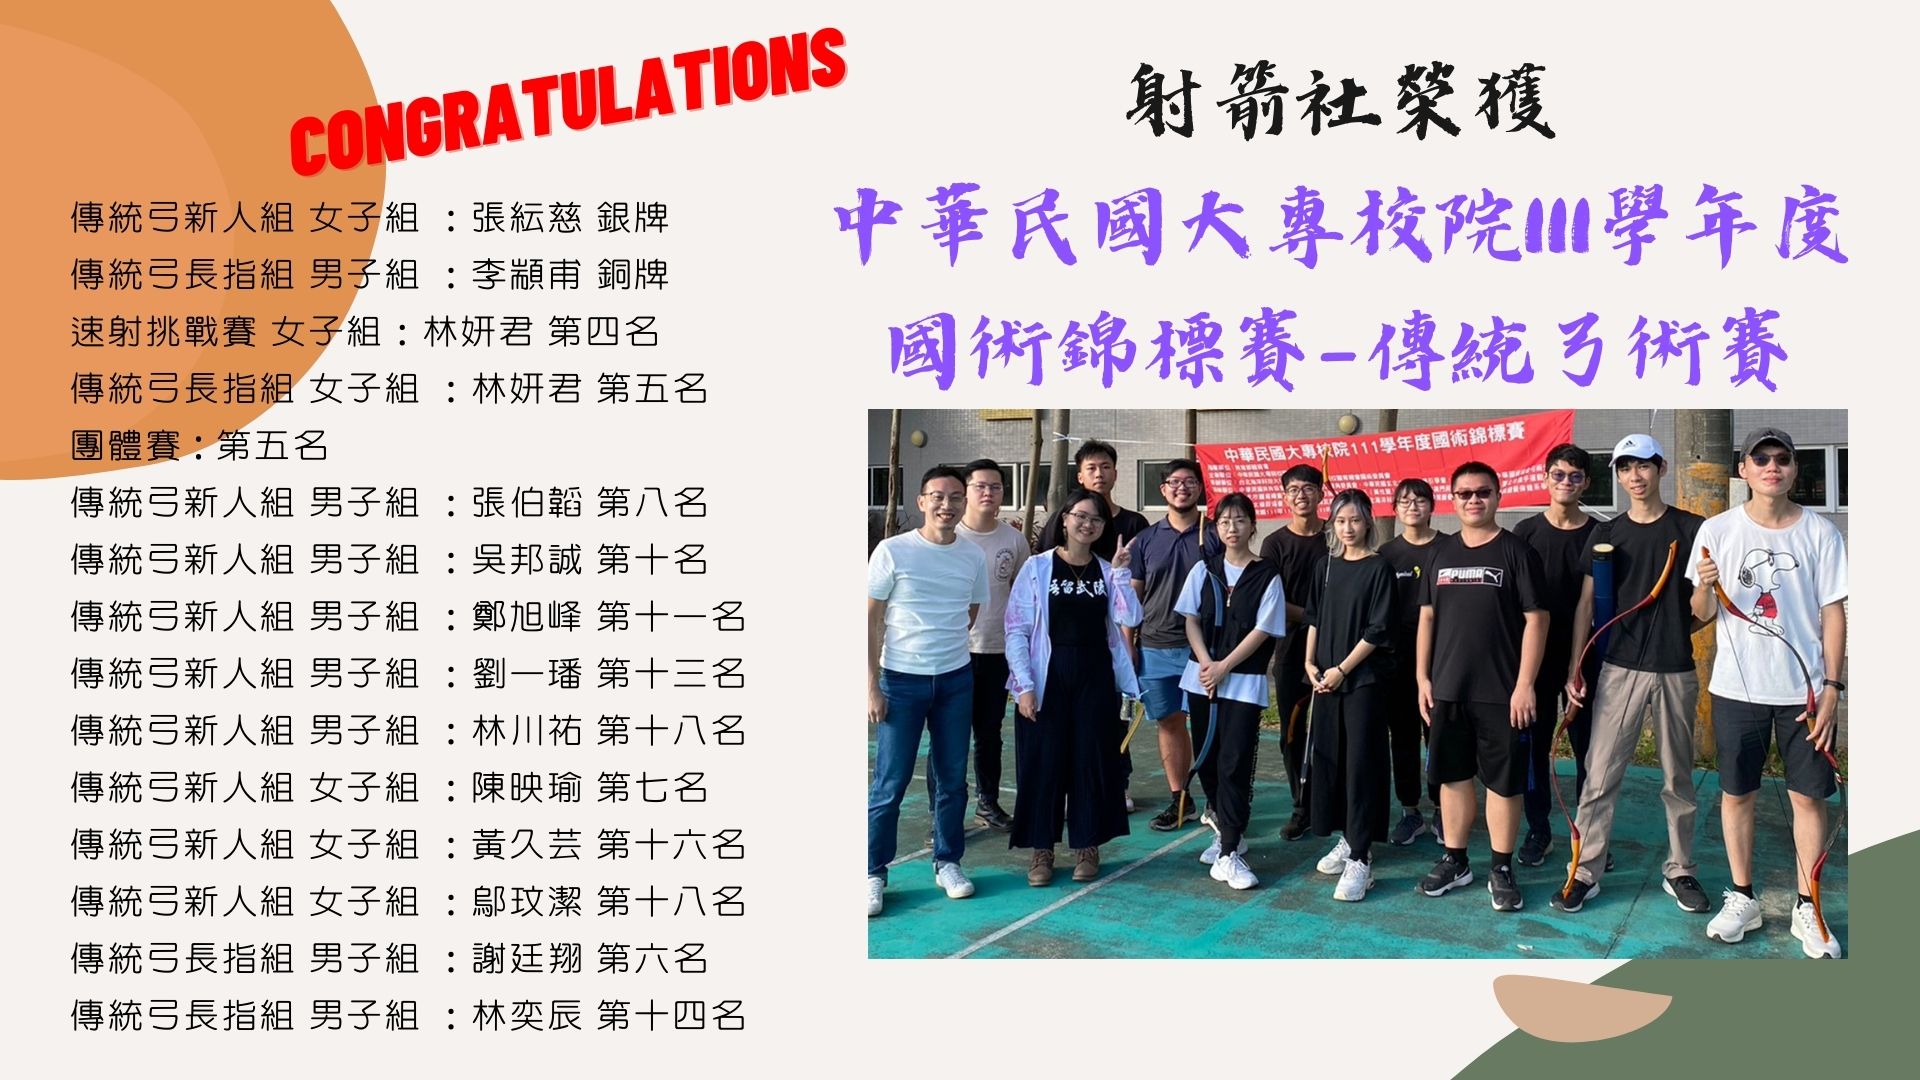 射箭社榮獲中華民國大專校園國術錦標賽-傳統弓術